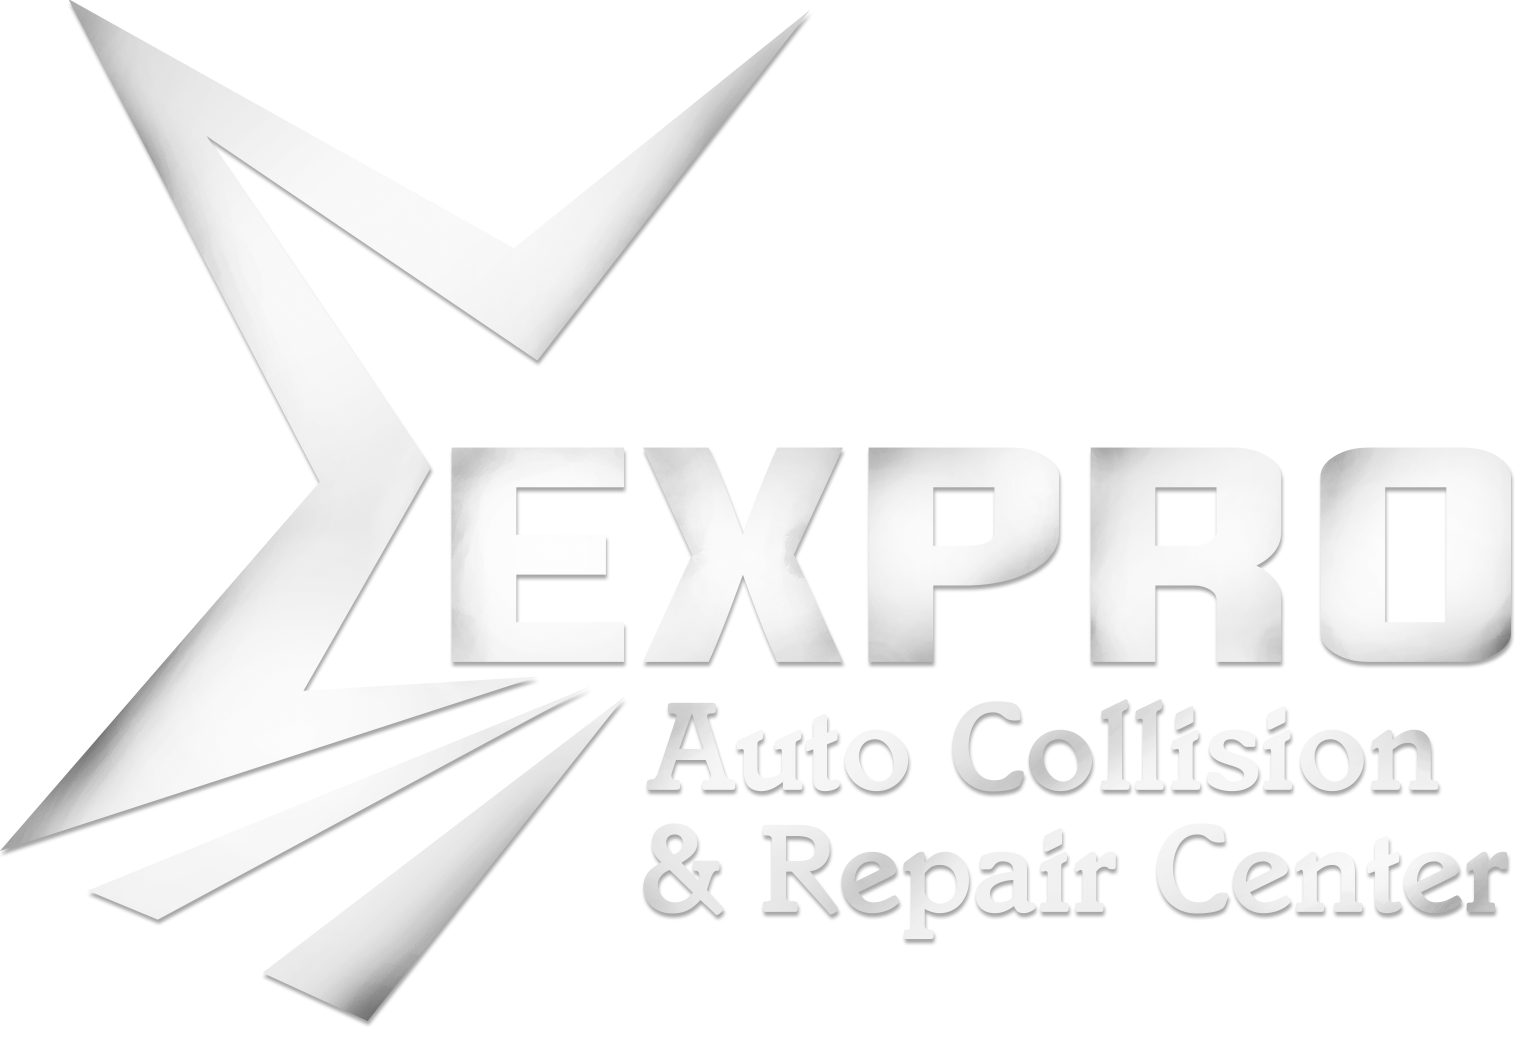 Auto Collision and Repair Center